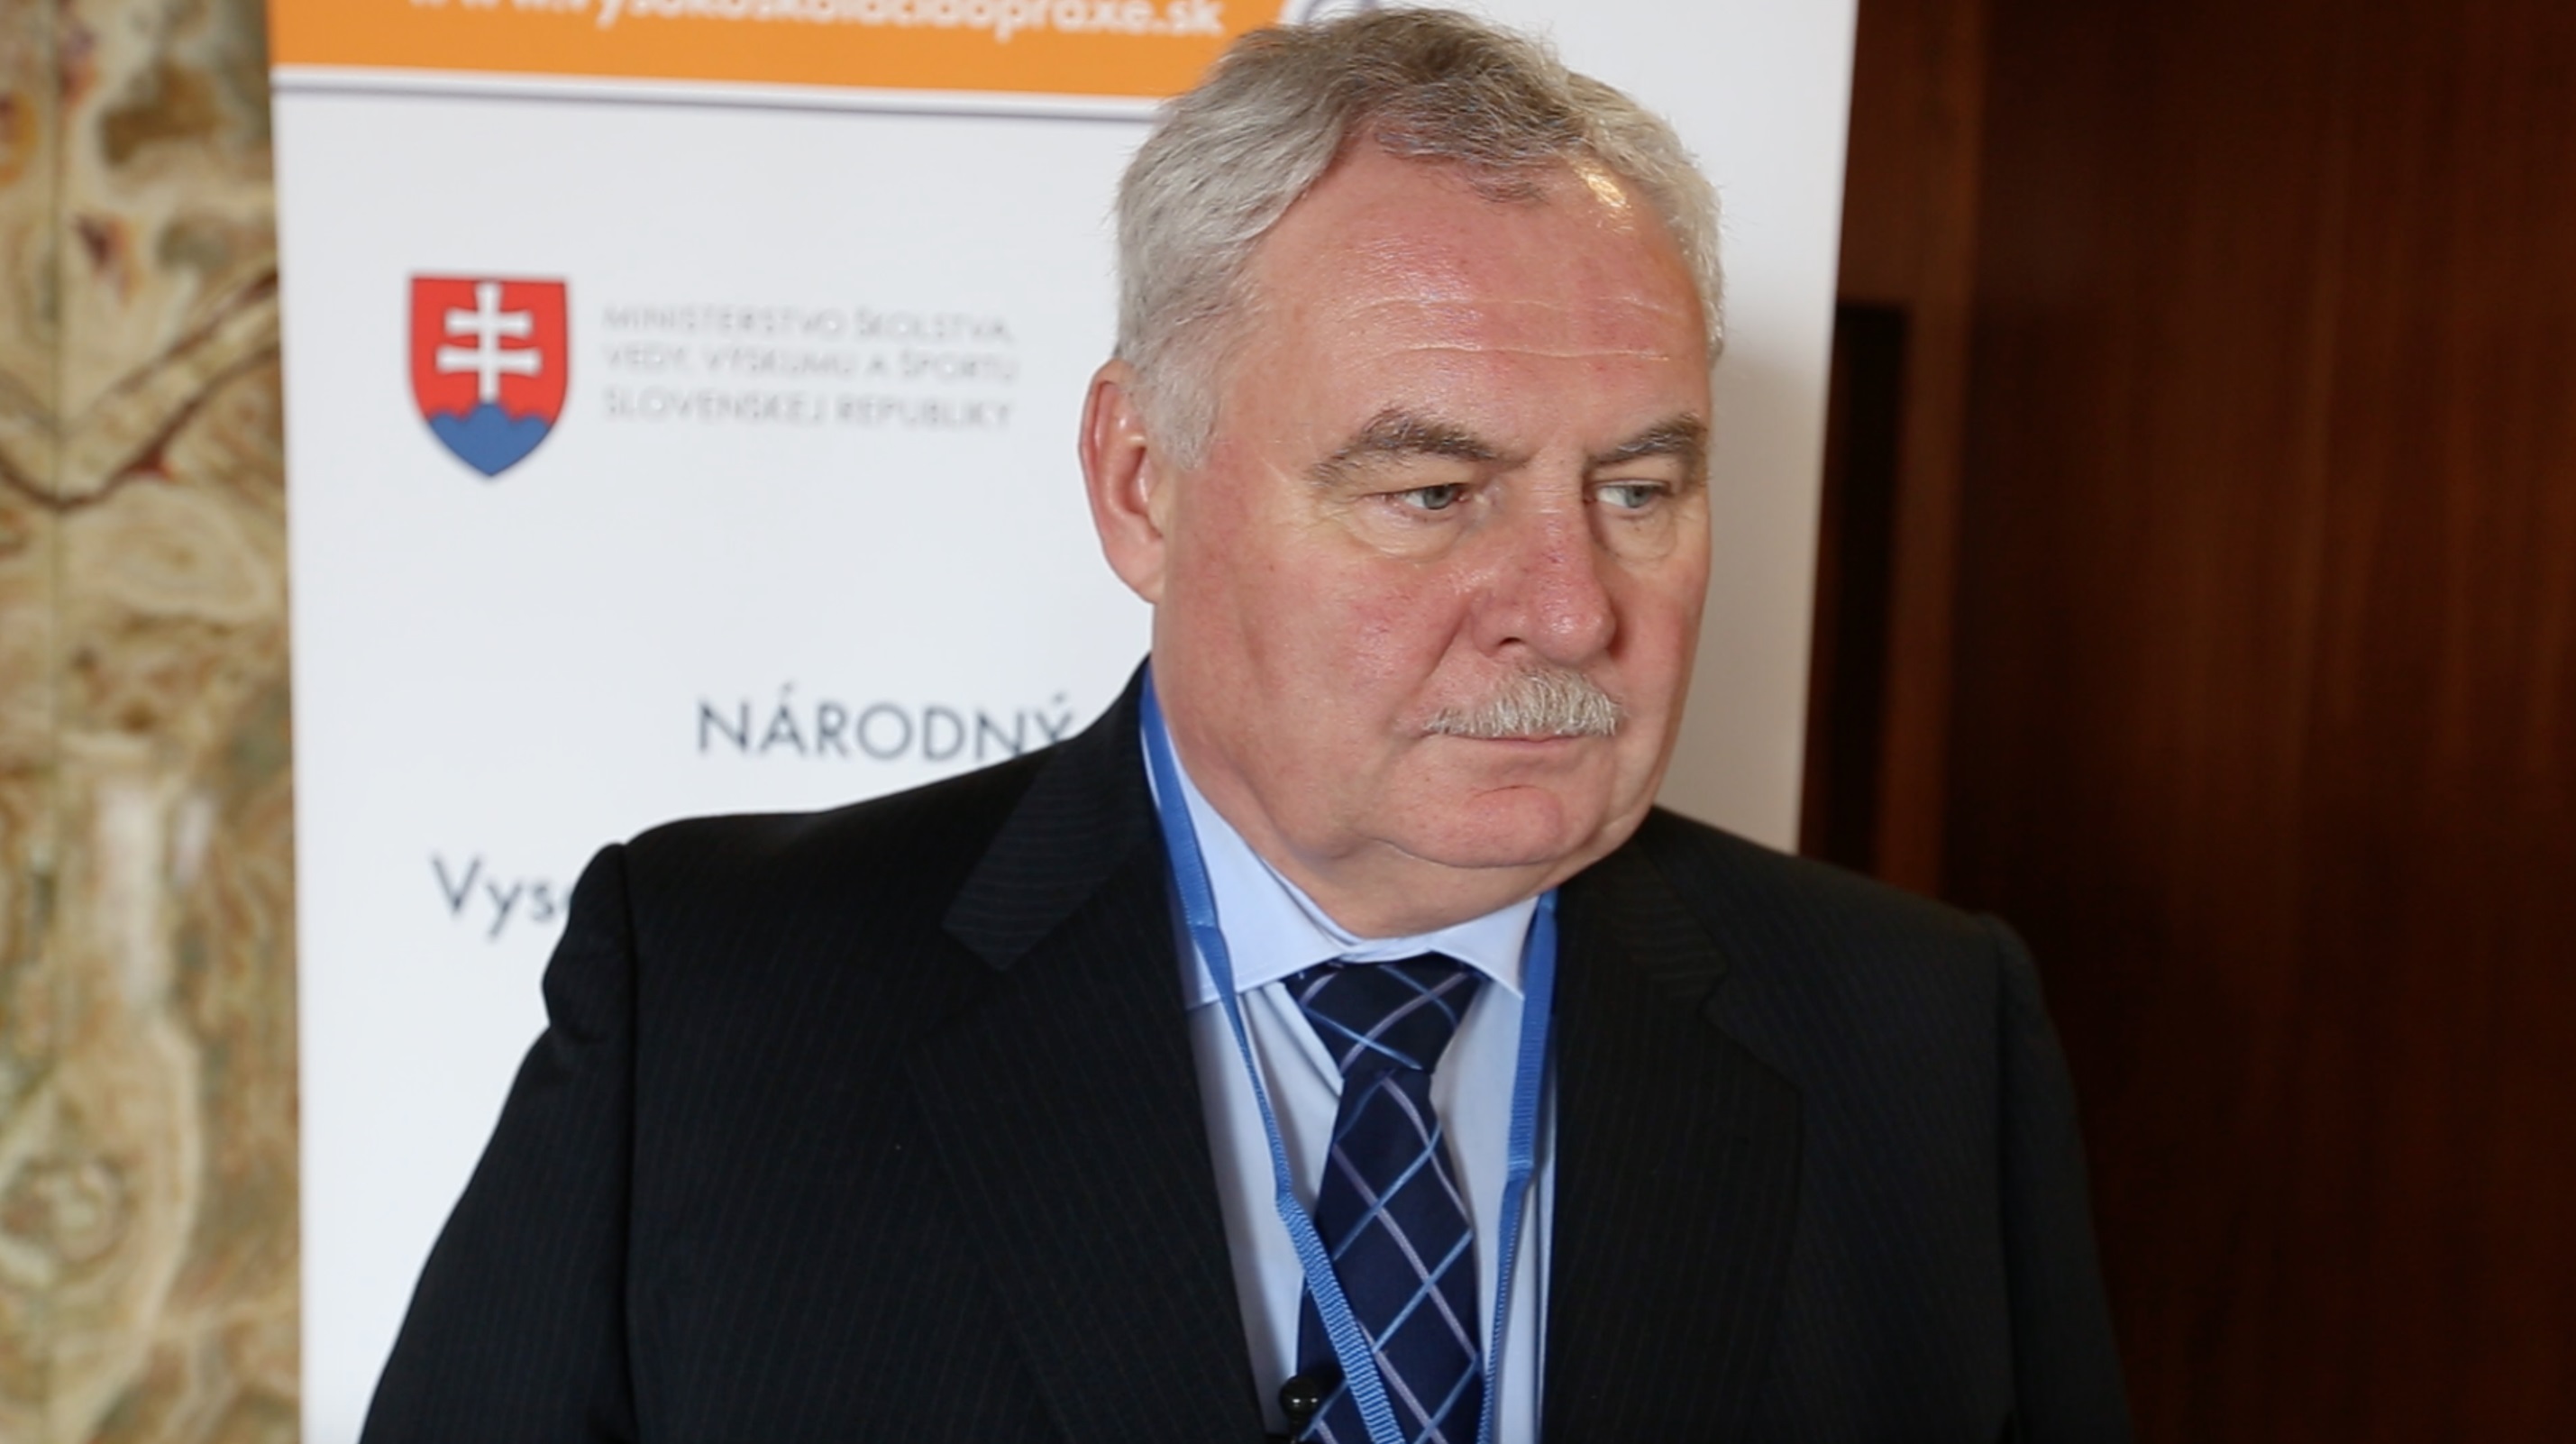 Rozhovor s Ing. Ľubomírom Plškom, generálnym riaditeľom KONŠTRUKTA - Industry, a.s.